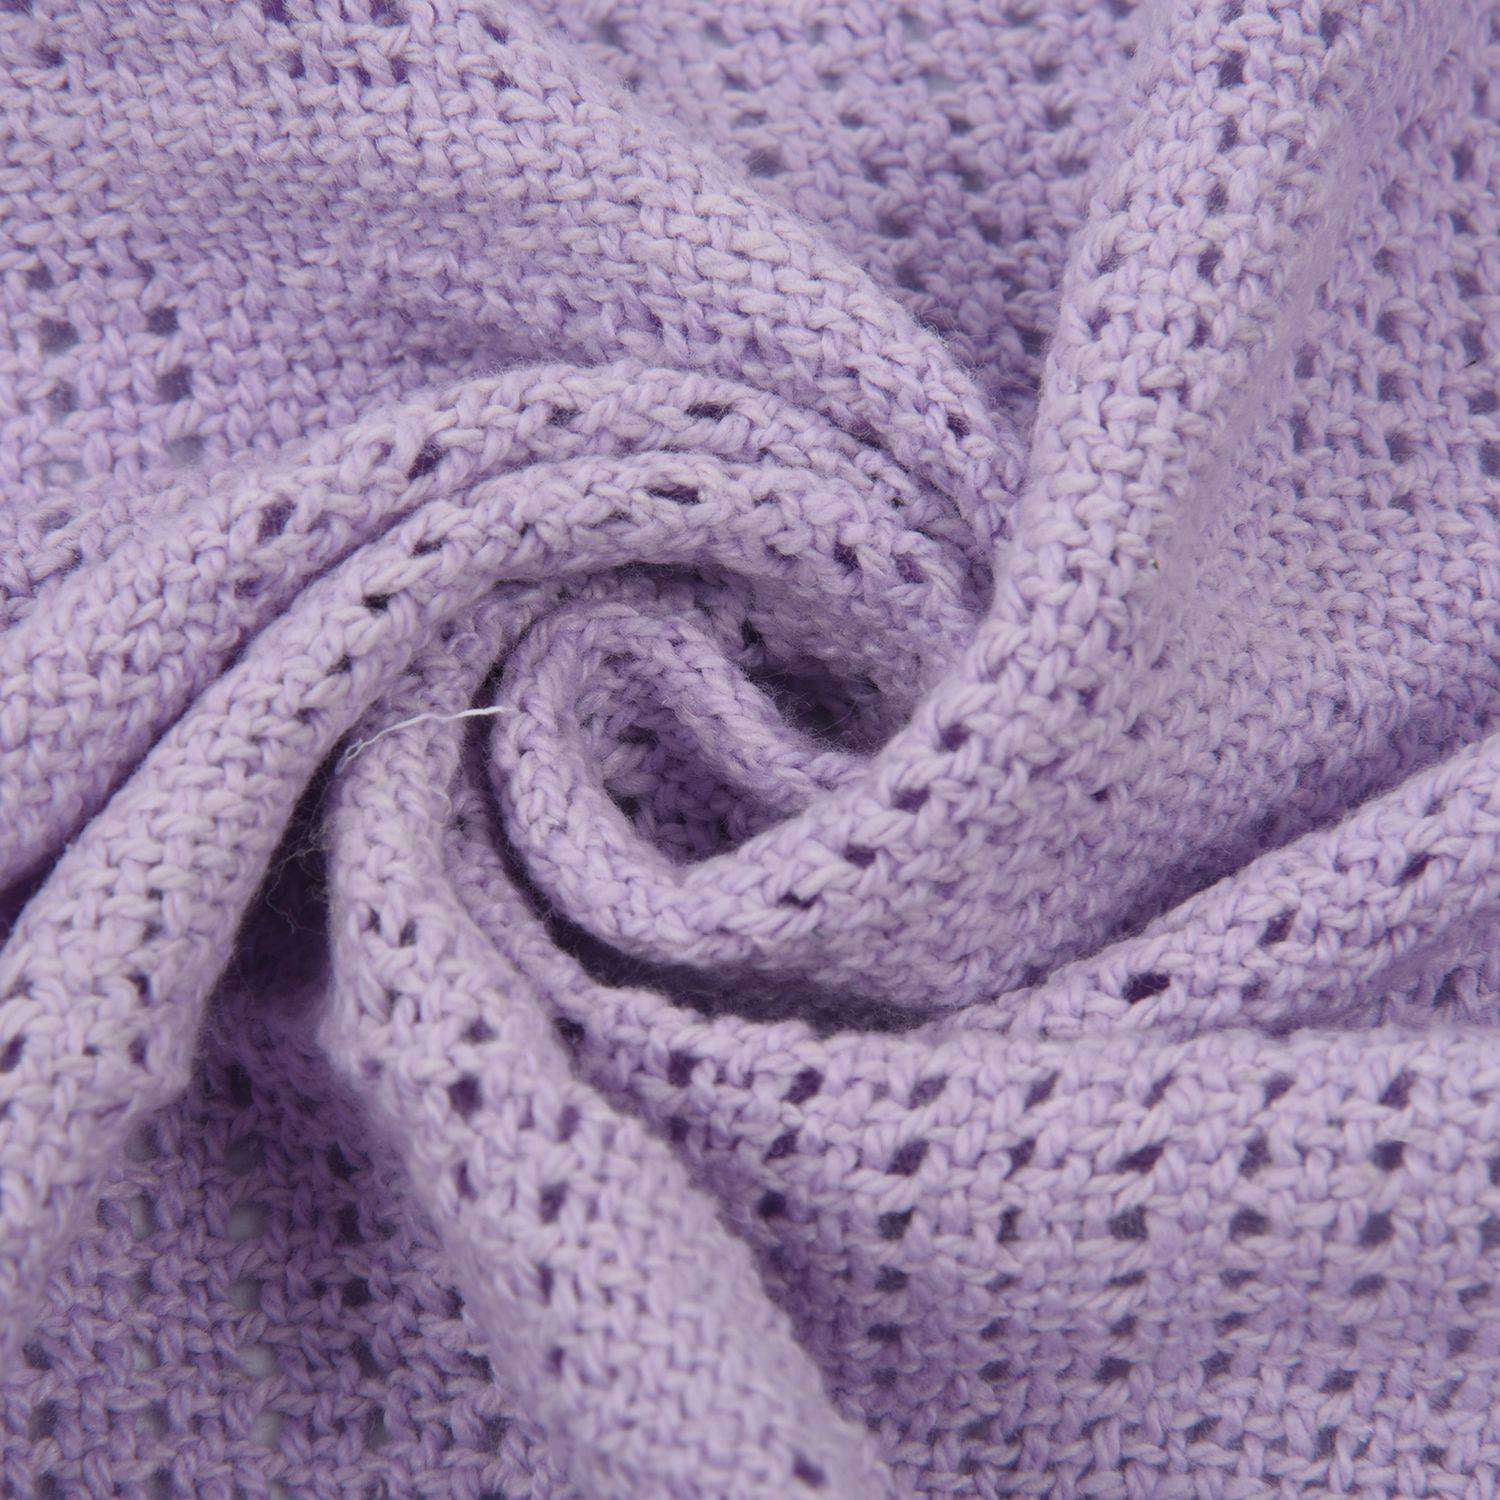 Baby Newborn Soft 100% Cotton Blanket Wrap Pram Bed Cot Pushchair Basket 